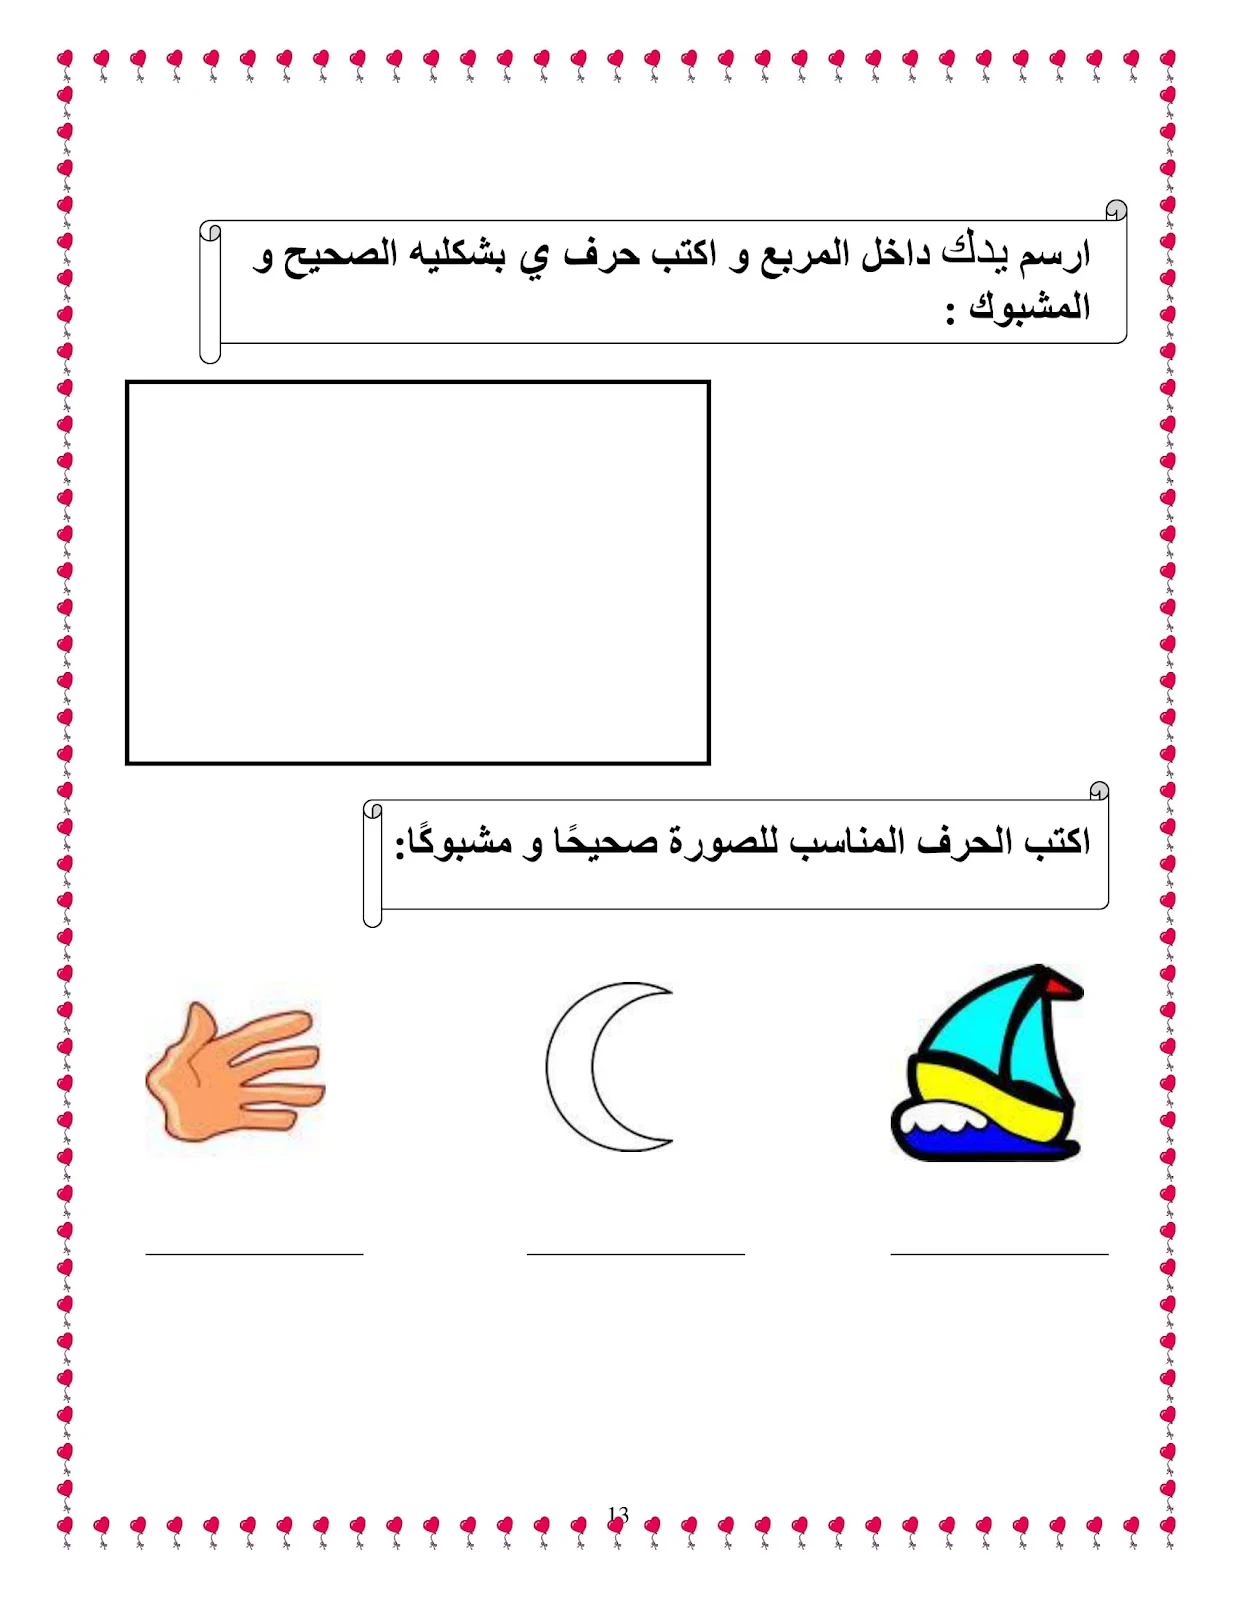 ملزمة تدريبات تعلم الحروف العربية للسنة اولى pdf تحميل مباشر